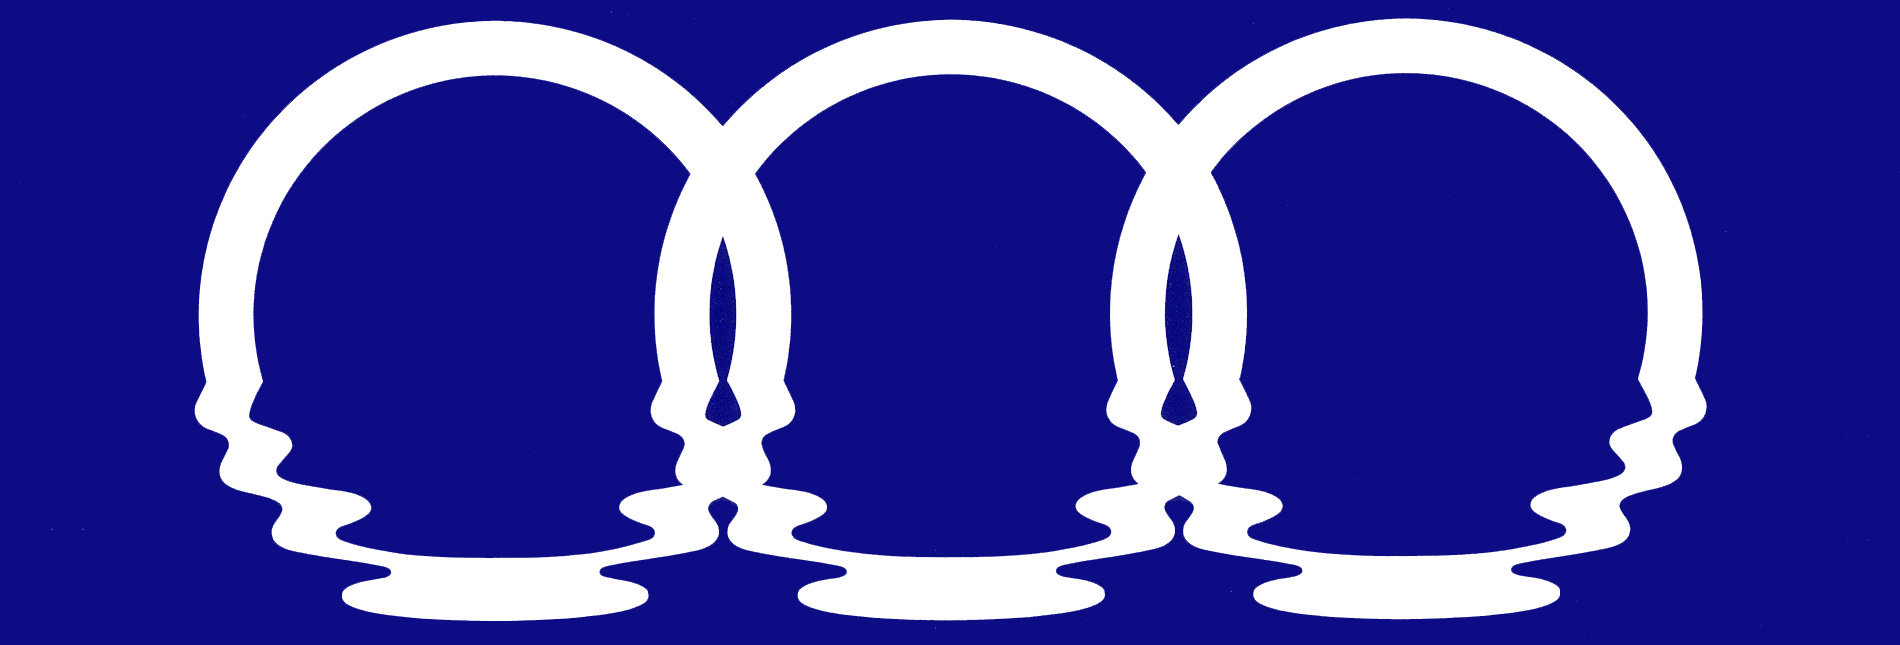 Exposition Logo 3